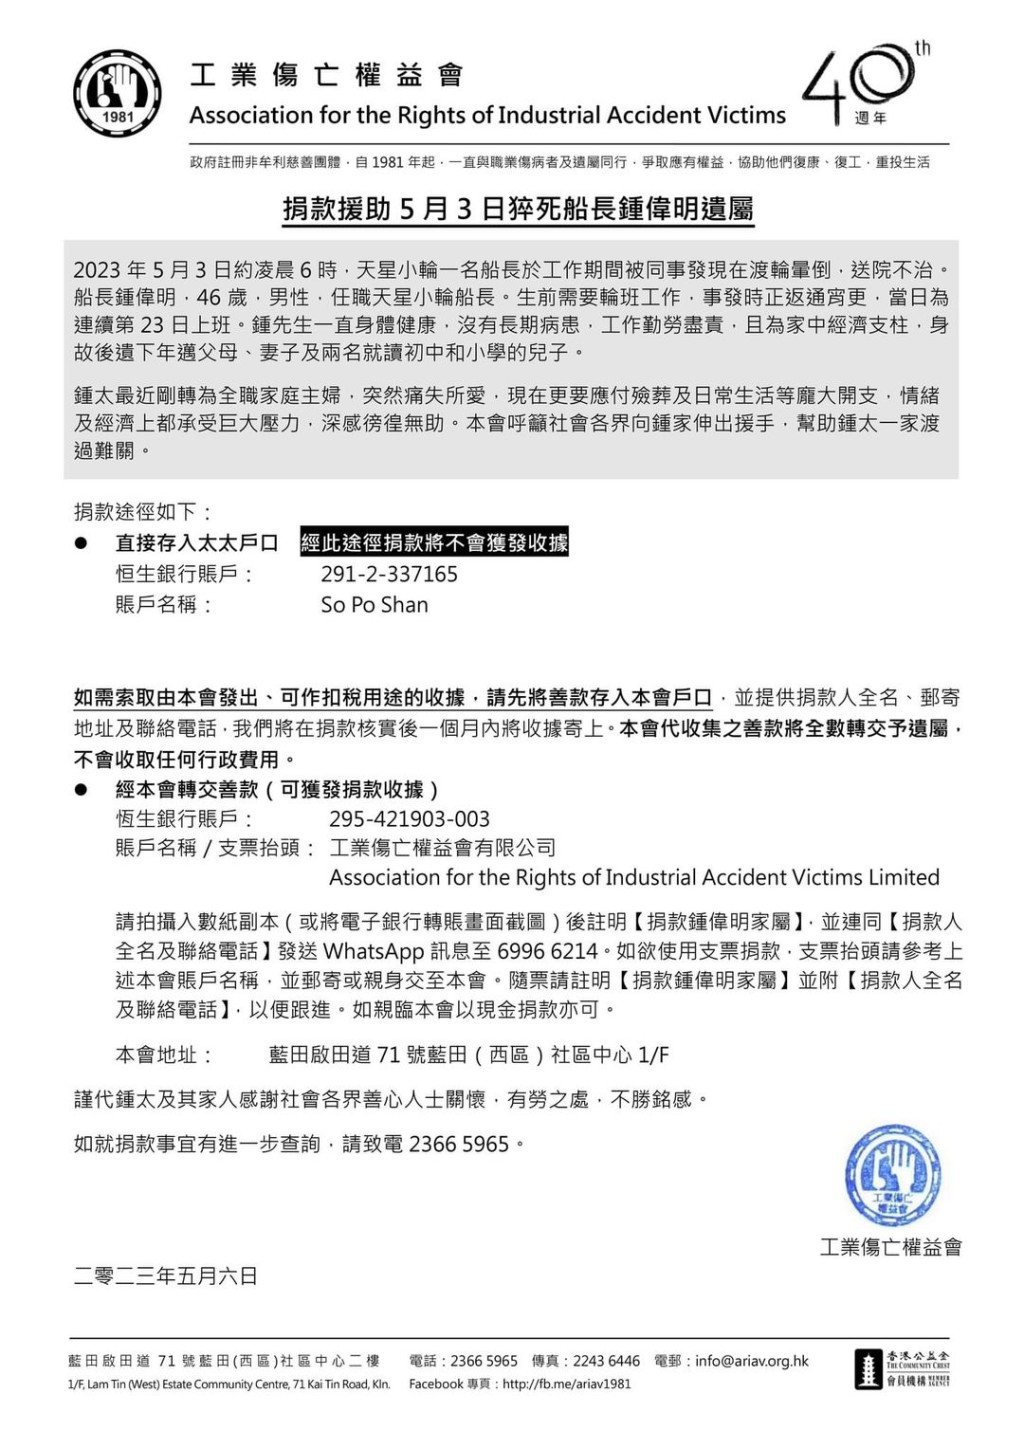 工权会呼吁市民捐款助锺太渡难关。fb：工权会